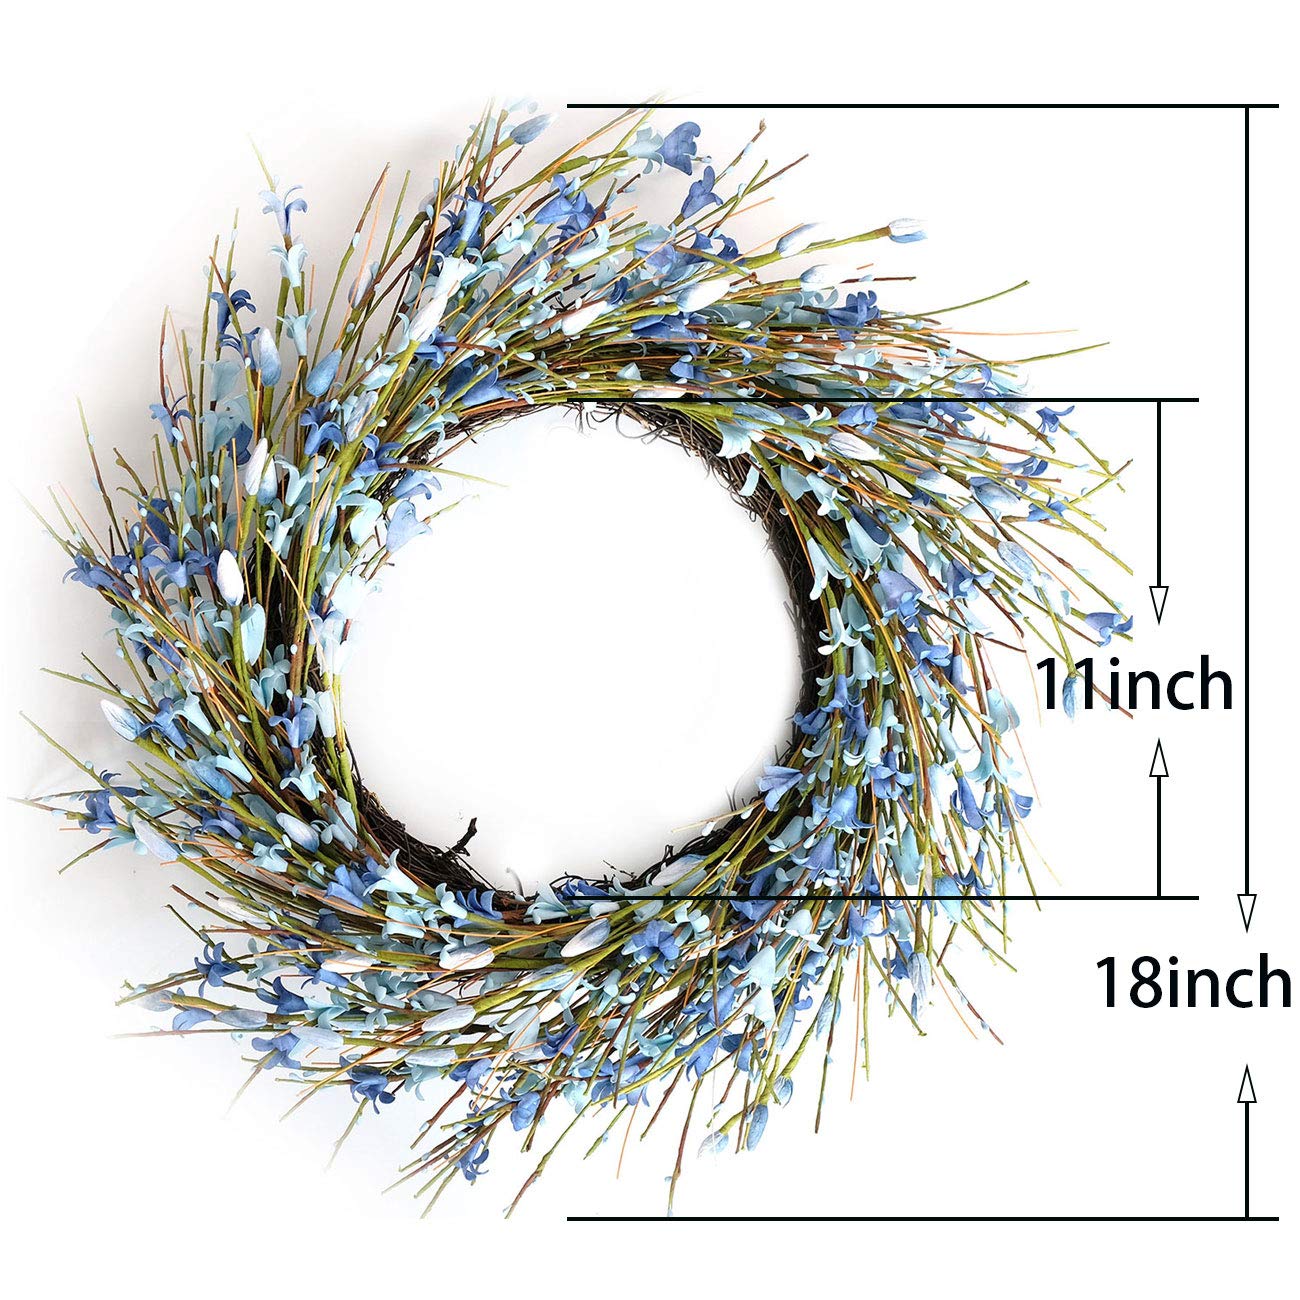 Bibelot 18inch Artificial Forsythia Flower Wreath, All Year Around Wreath for Front Door, Wedding Window Home Wall Indoor Front Door Decor (Blue, 18in)